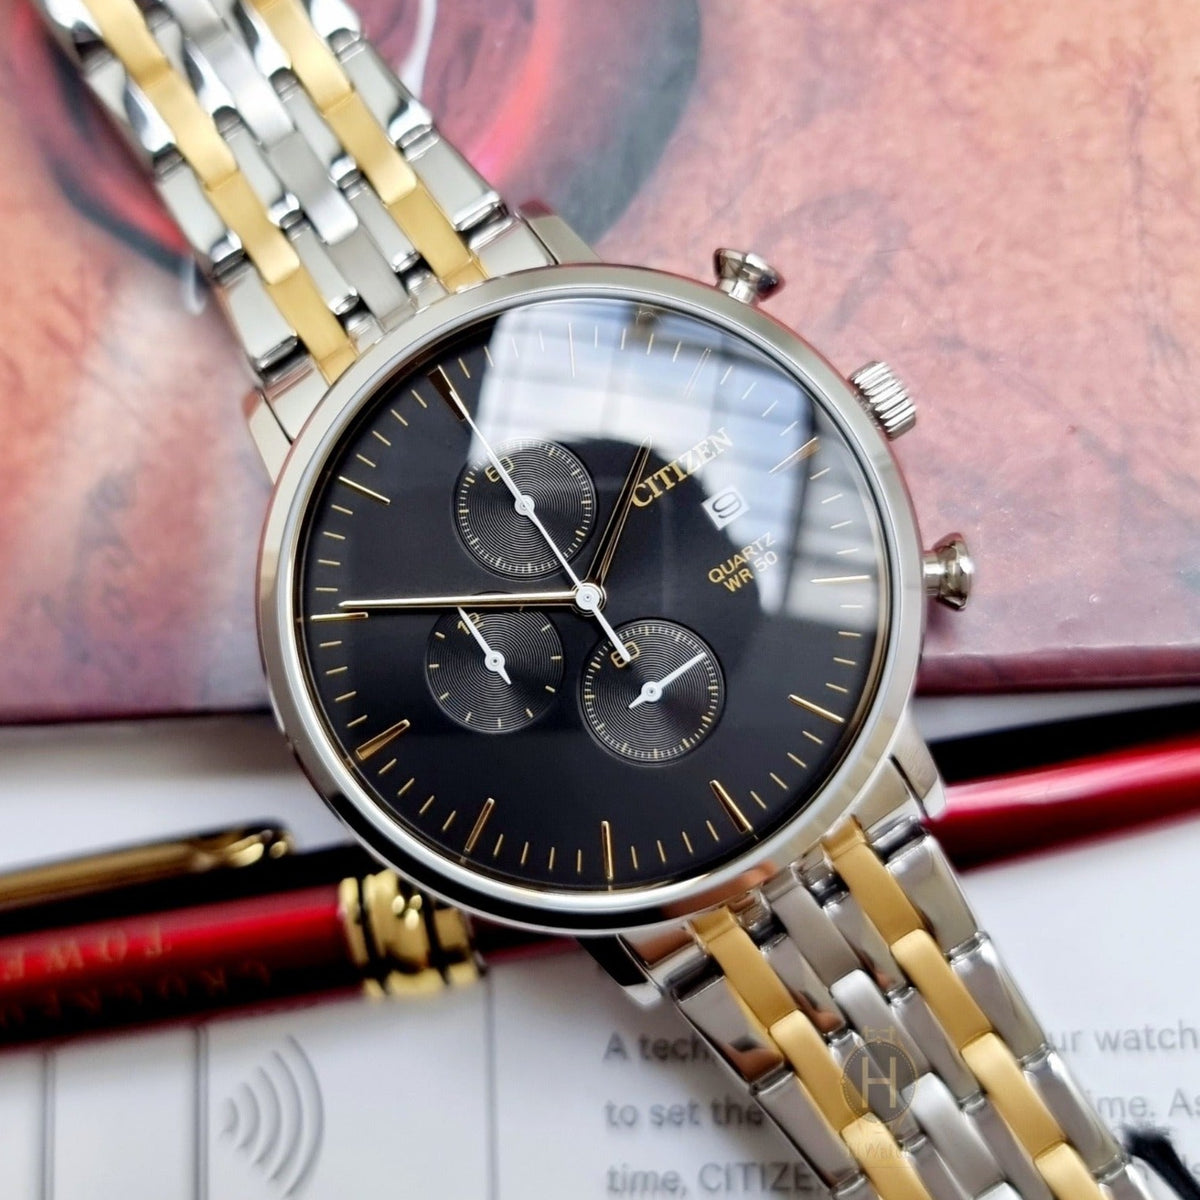 Citizen - AN3614-54E - Quartz Chronograph Stainless Steel Watch For Men